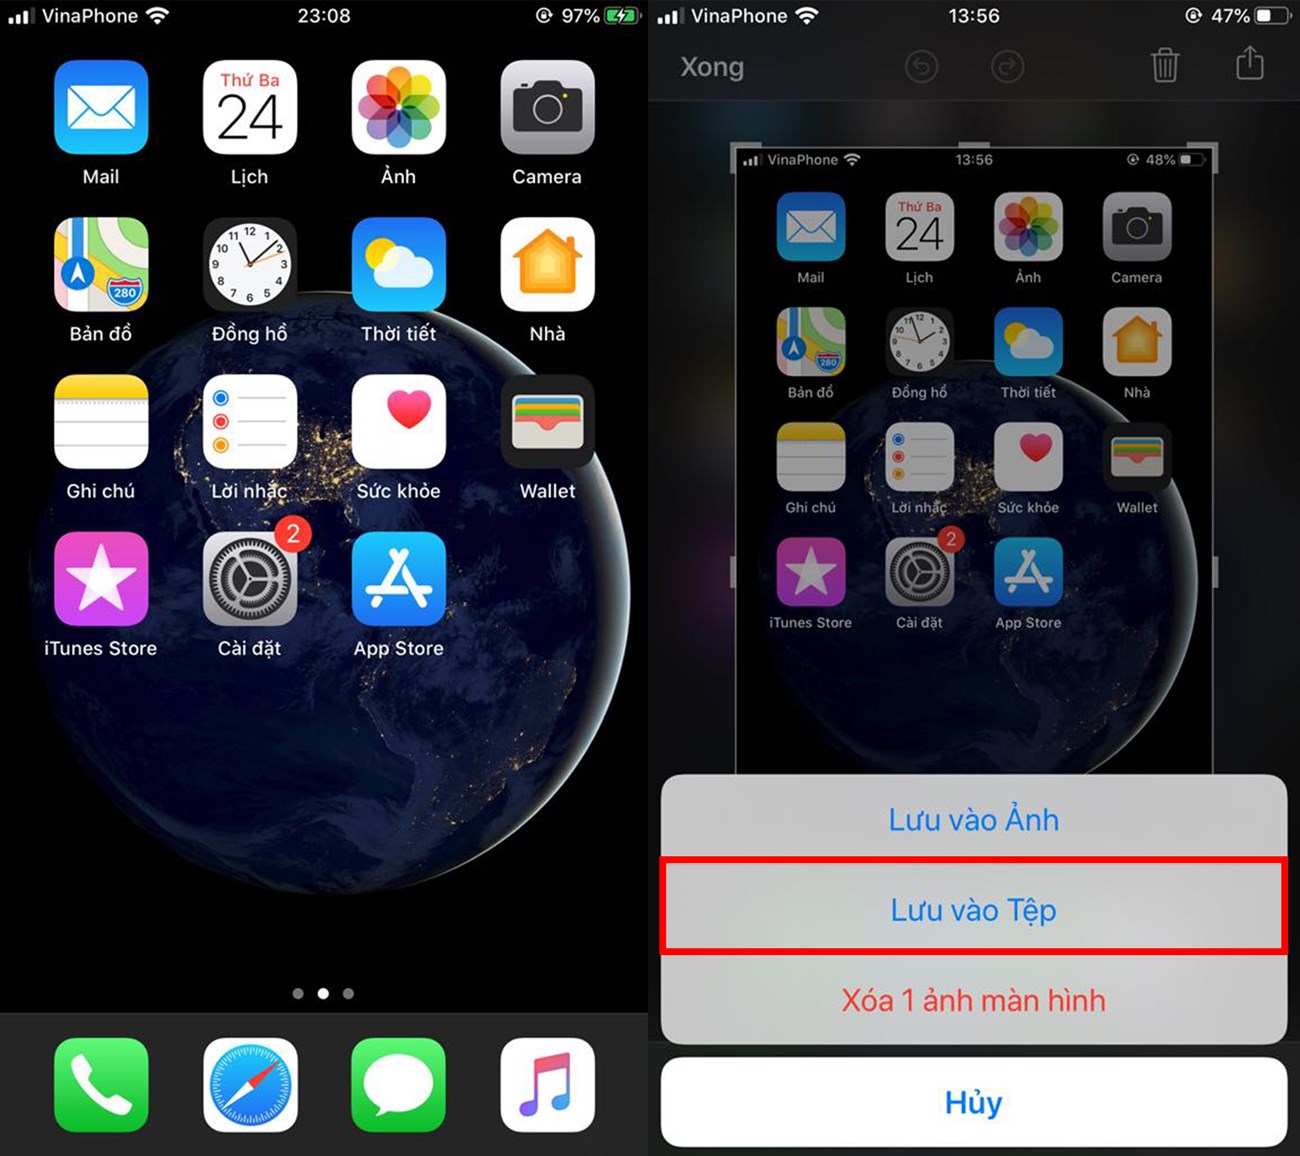 iOS 13: Trải nghiệm iOS 13 - phiên bản mới nhất của hệ điều hành iOS trên iPhone. Với nhiều tính năng mới và tối ưu hiệu suất, việc sử dụng iPhone trở nên đơn giản và dễ dàng hơn bao giờ hết. Cùng khám phá nhé!